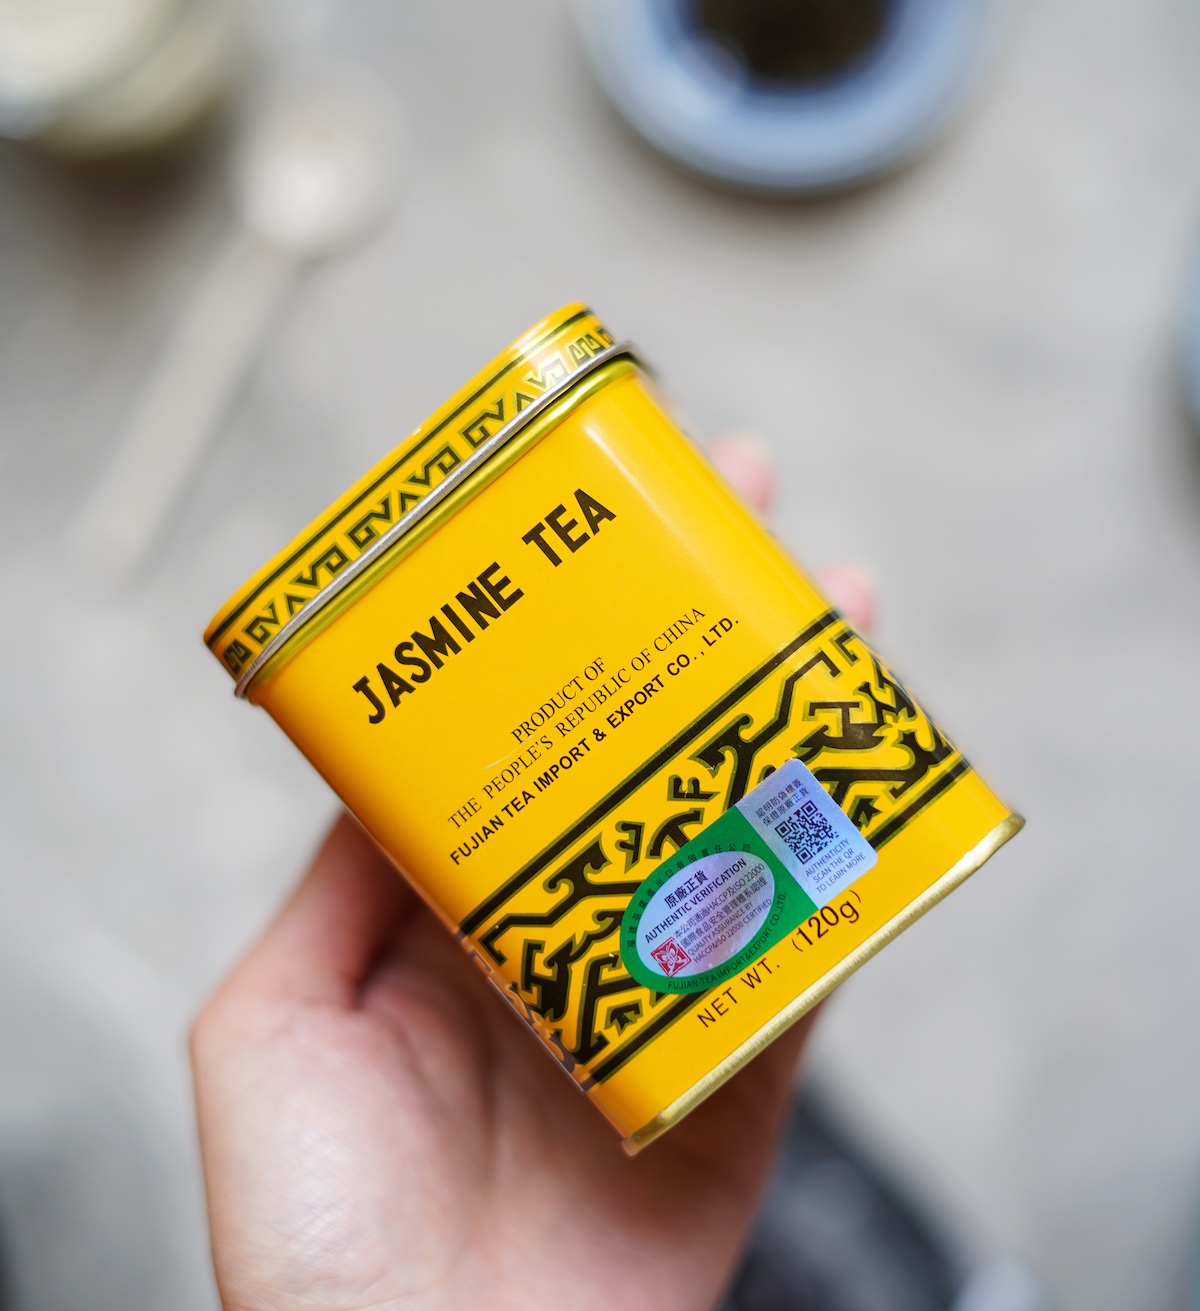 Tin box of jasmine tea leaves.